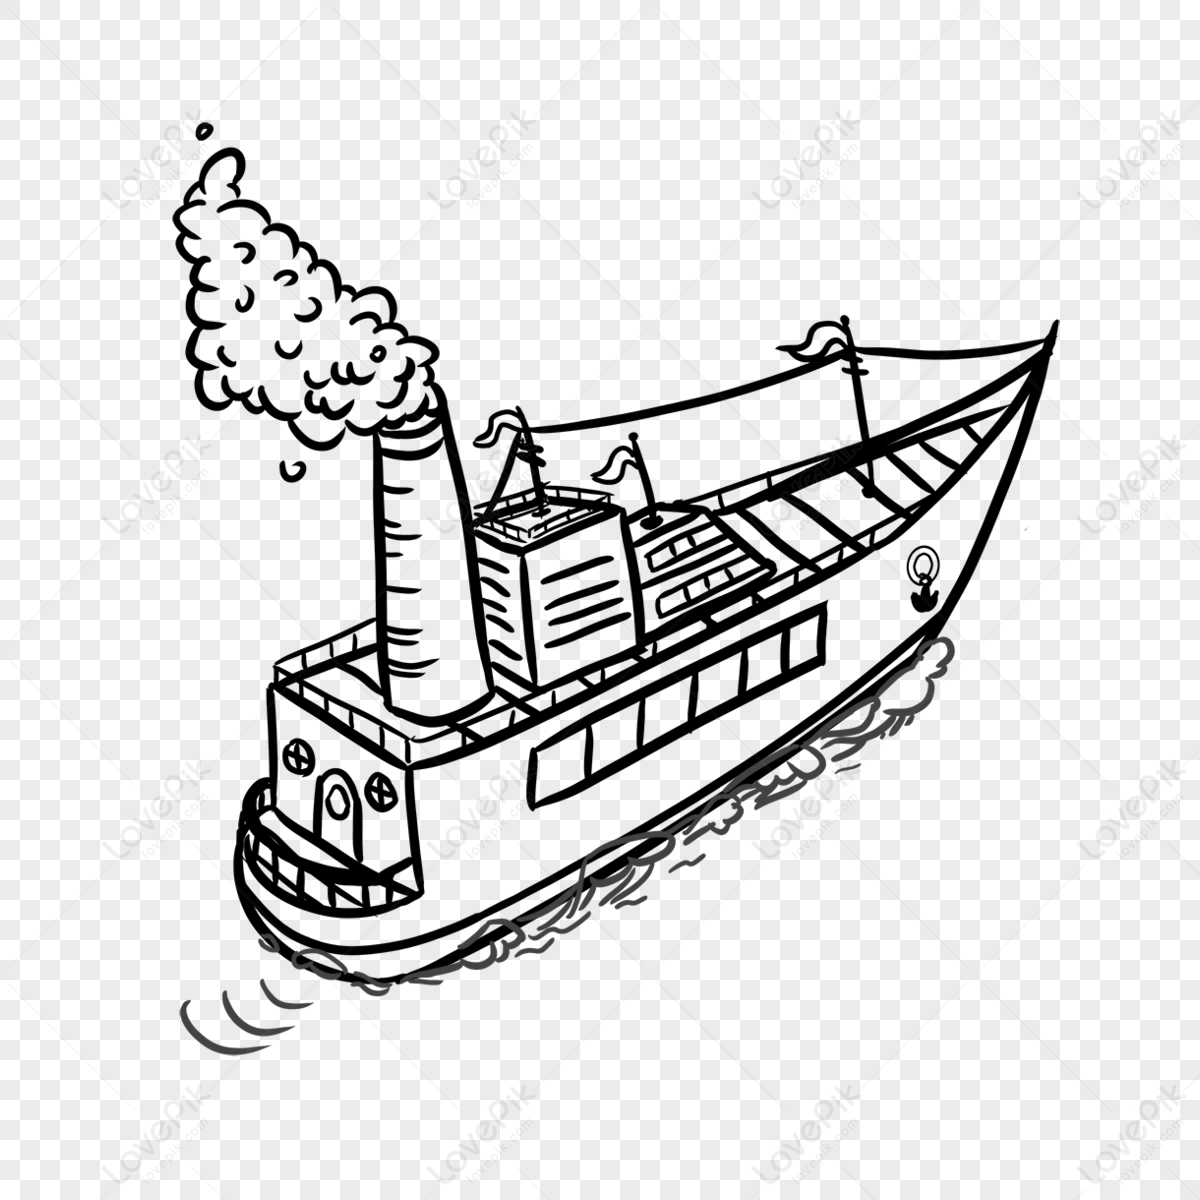 How To Draw Sailboats | Boat drawing, Boat drawing simple, Sailboat drawing